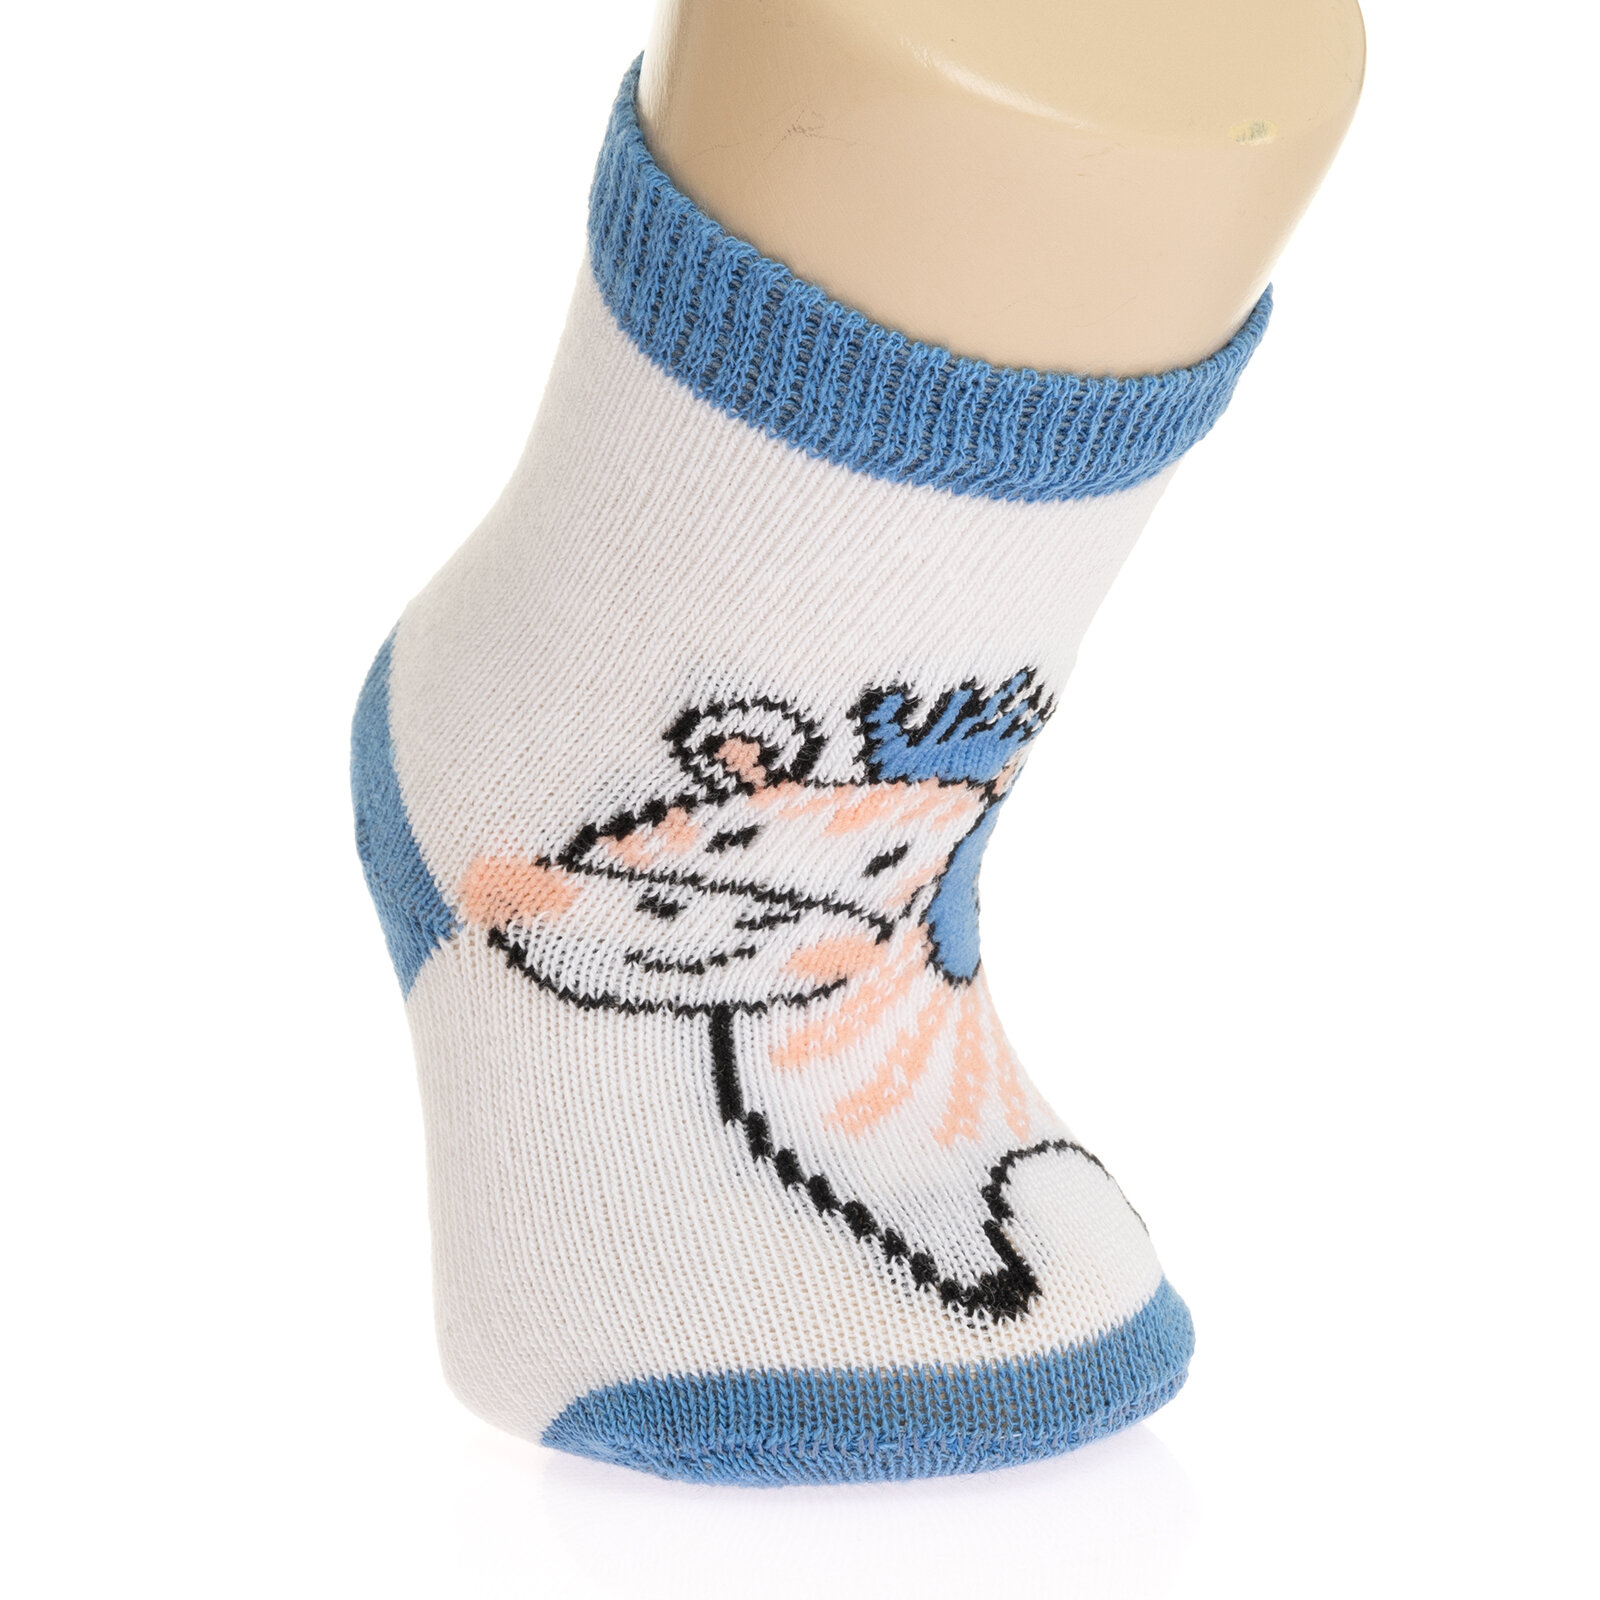 Bolero Desenli 3lü Kaydırmaz Çorap Erkek Bebek